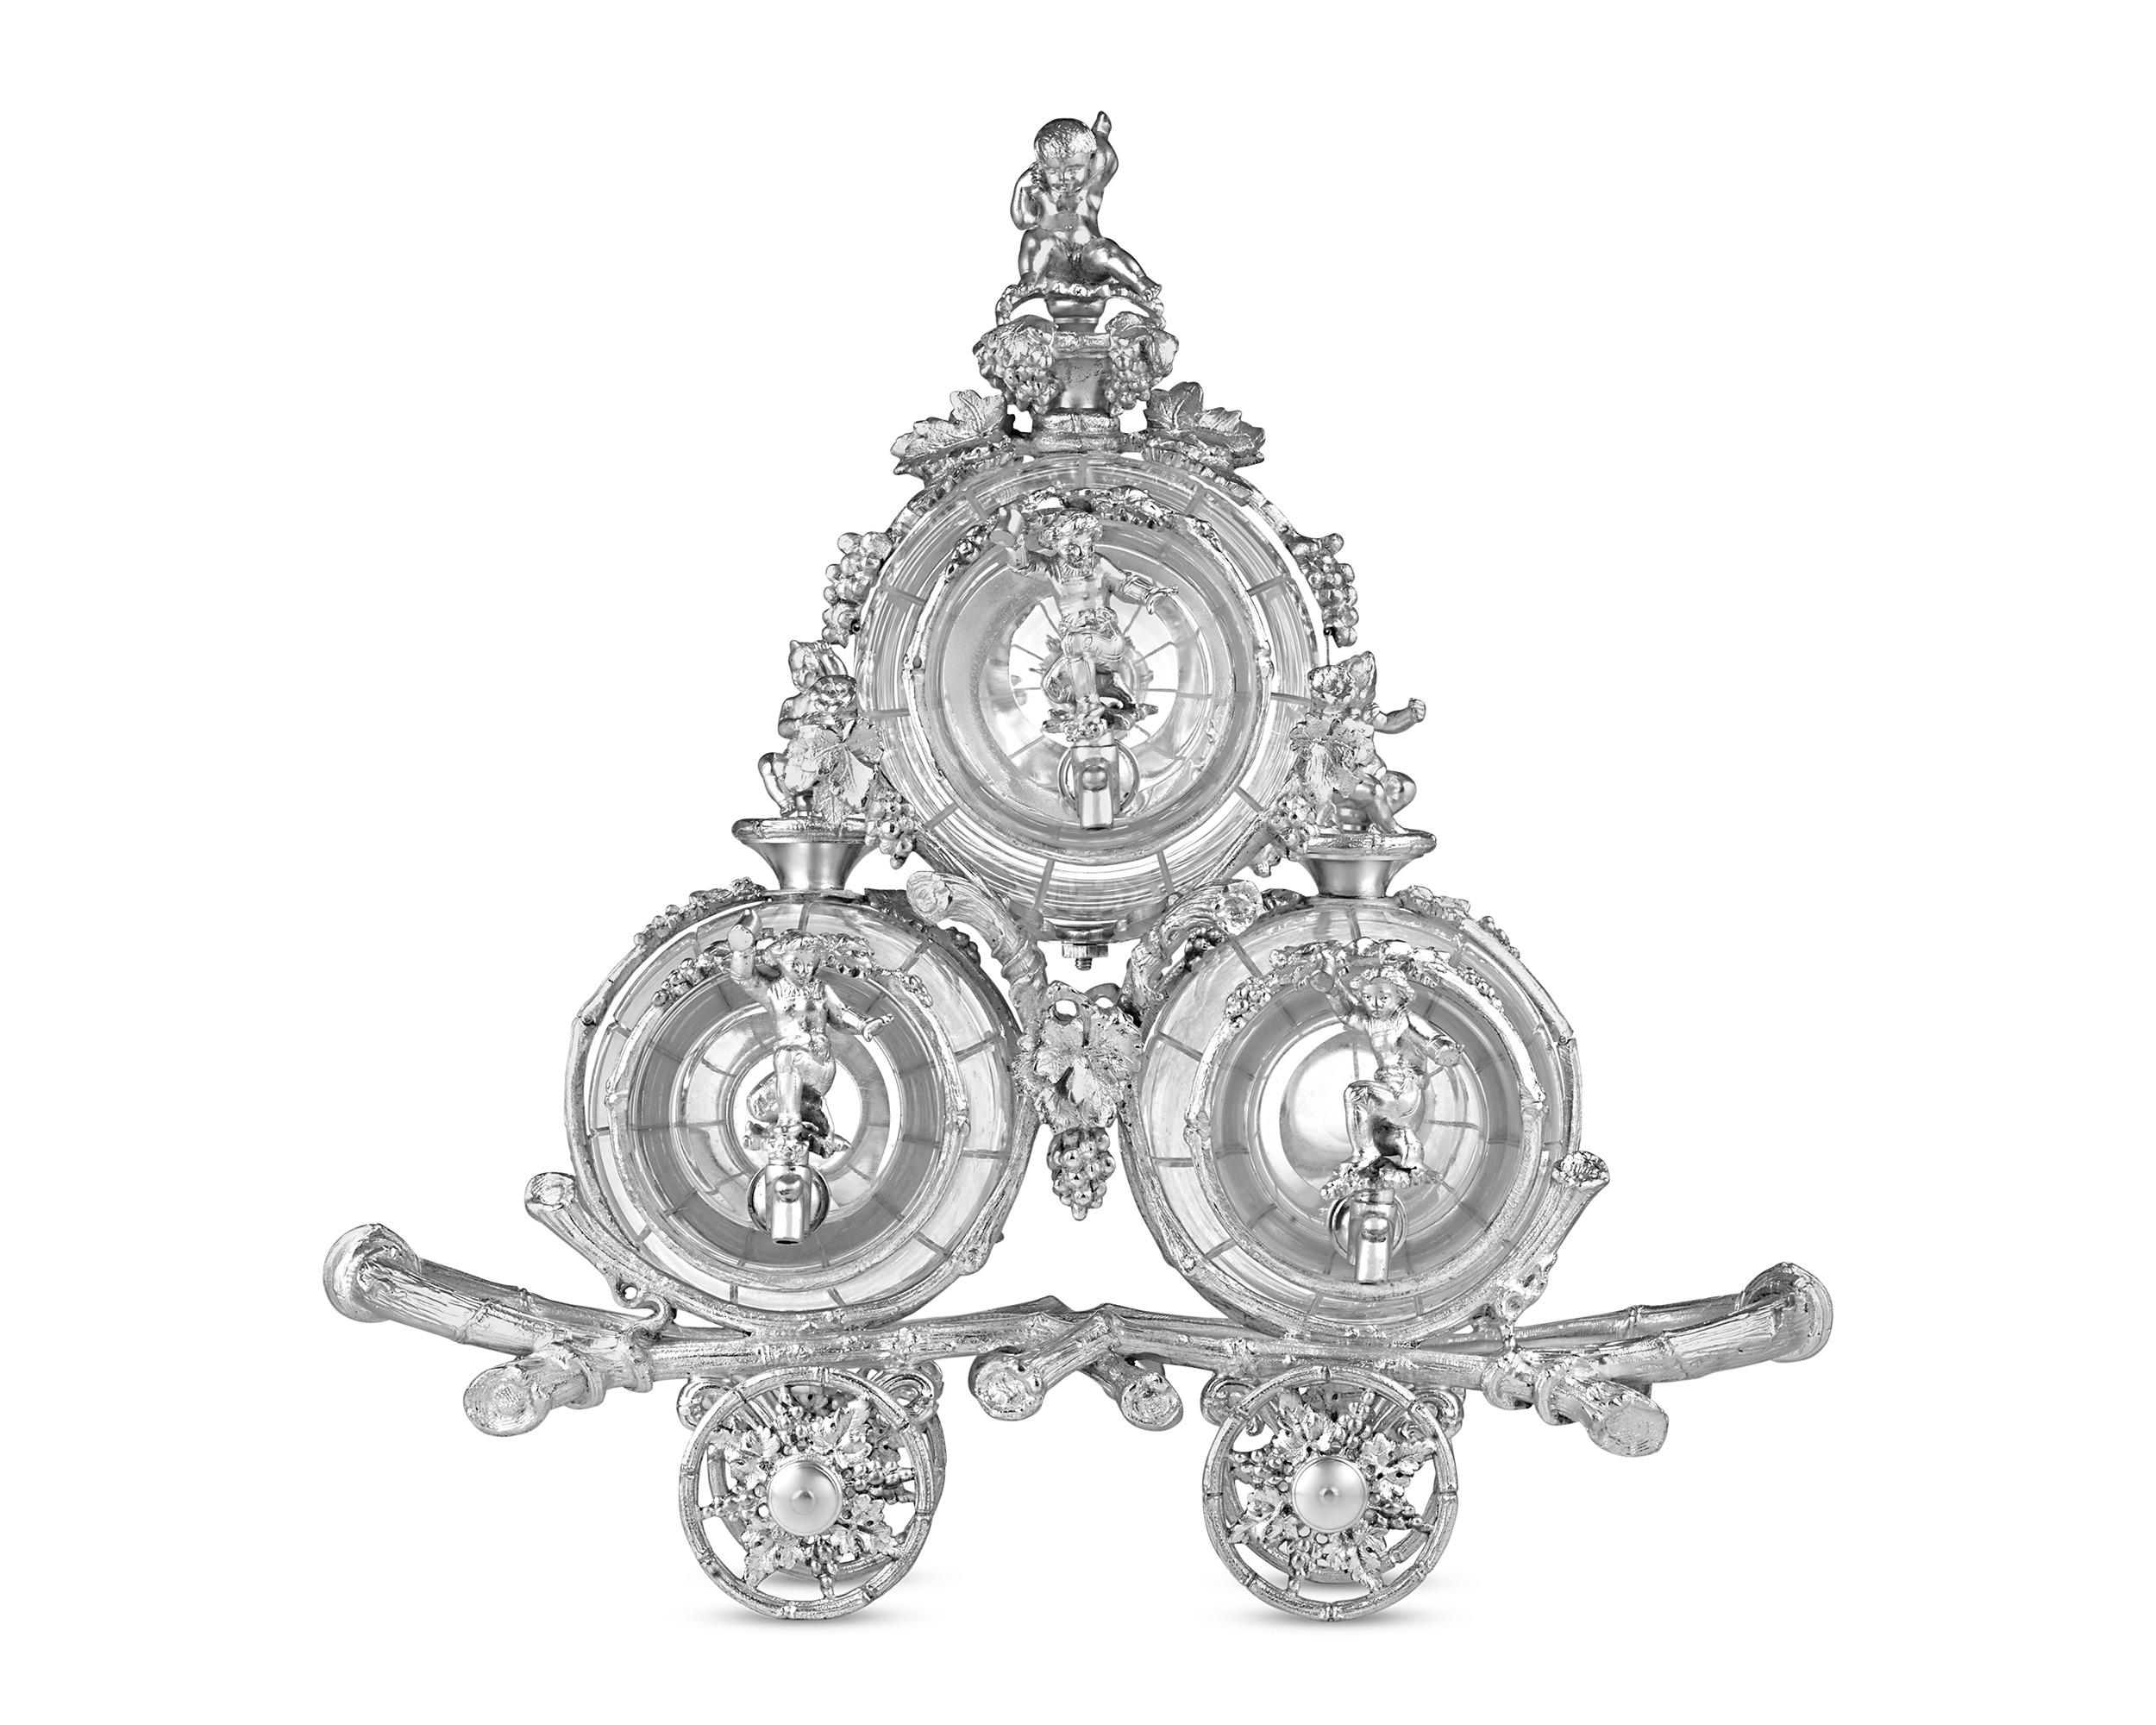 Dieser charmante englische Tantalus aus Kristall und Silberblech aus dem 19. Jahrhundert hat die Form von drei Fässern auf einem Wagen. Historisch gesehen bestand der Zweck des Tantalus darin, die Lieblingsgetränke vor ungewolltem Verzehr zu